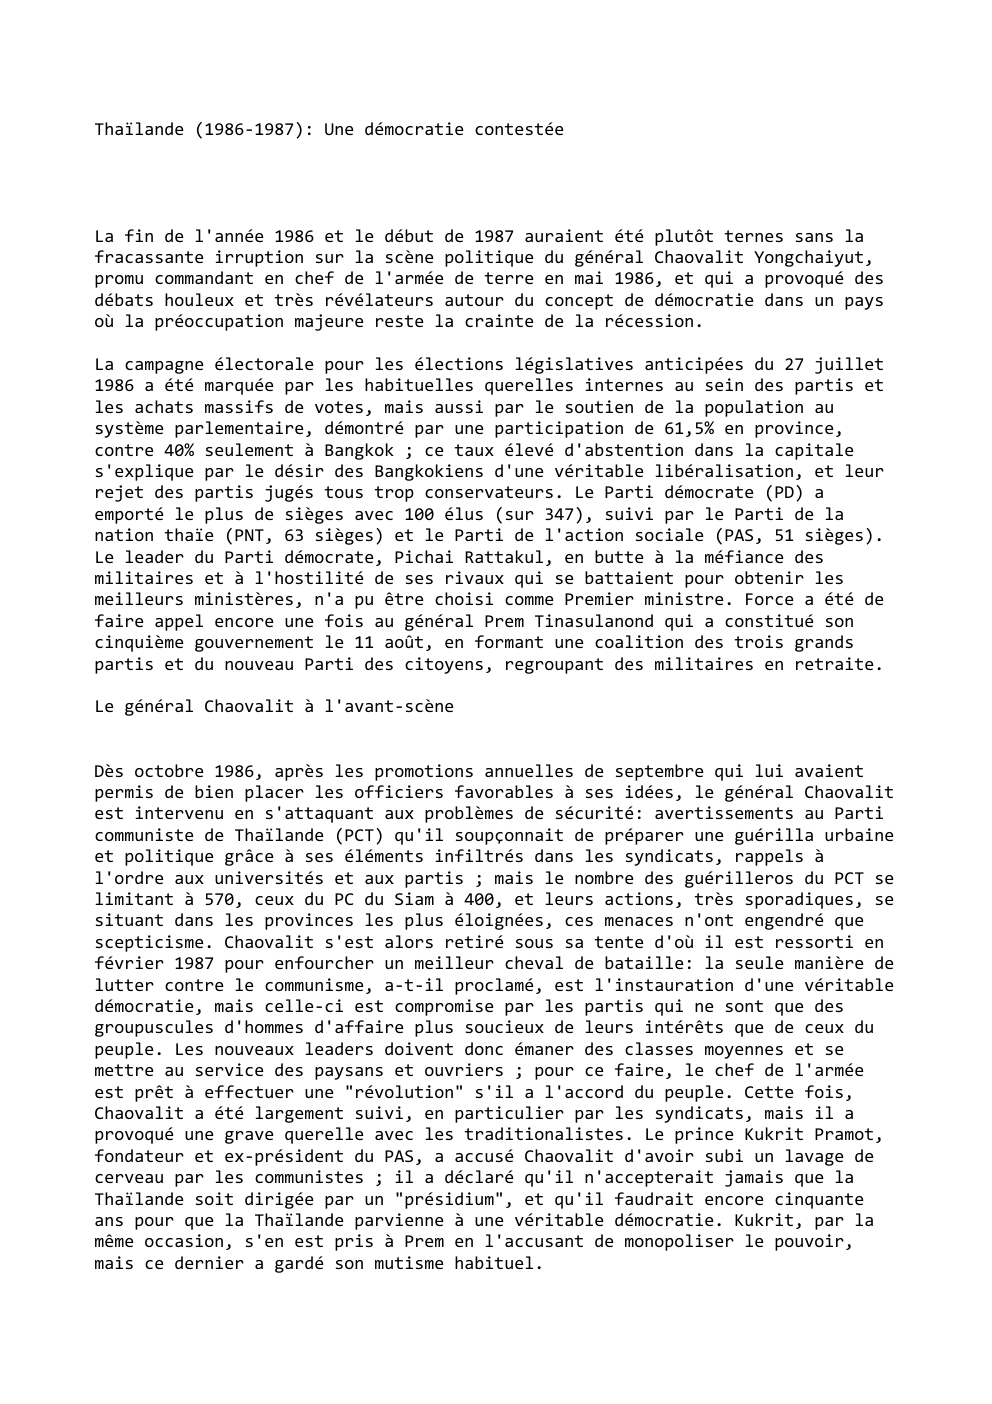 Prévisualisation du document Thaïlande (1986-1987): Une démocratie contestée

La fin de l'année 1986 et le début de 1987 auraient été plutôt ternes sans...